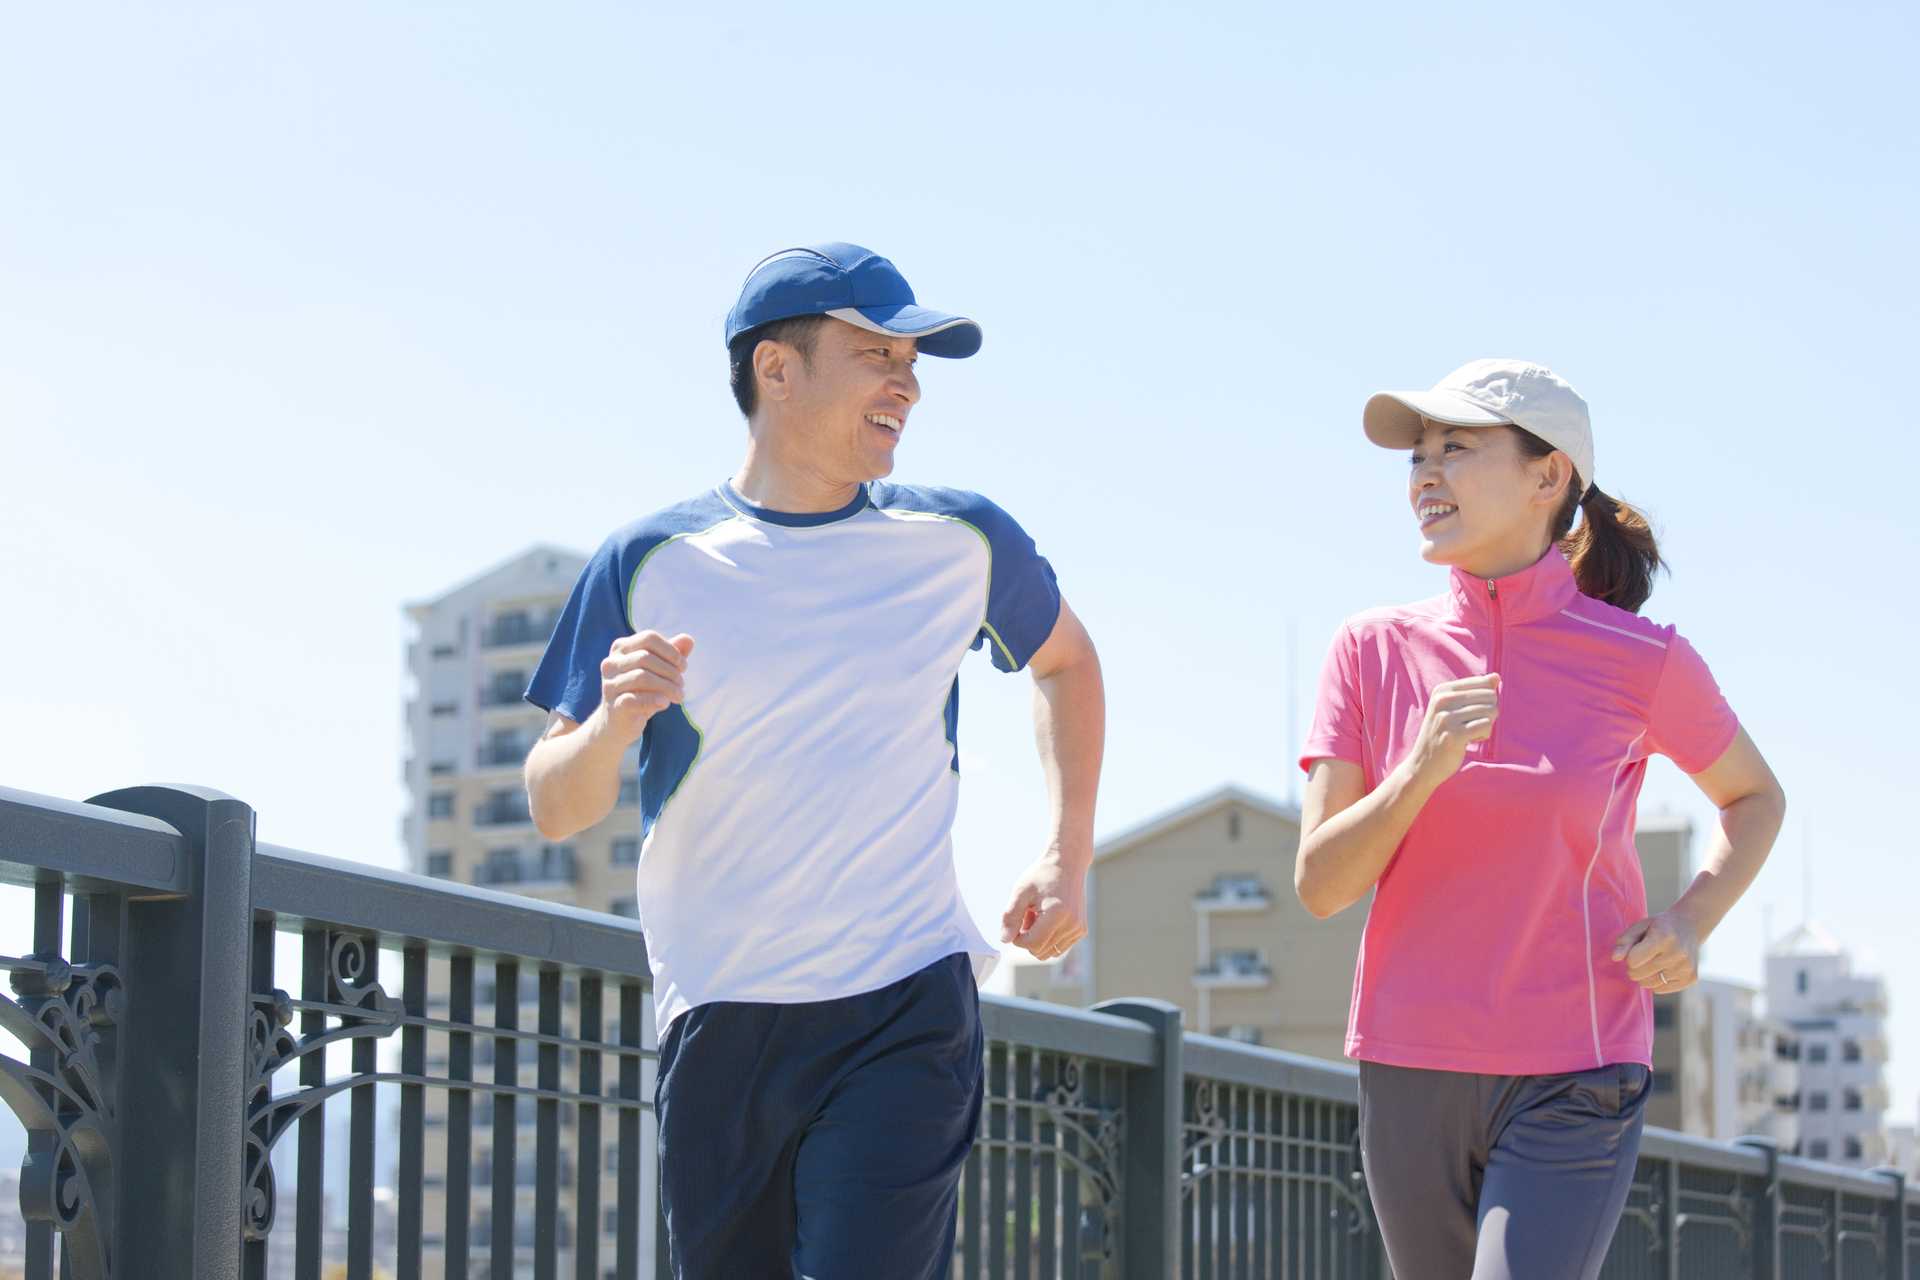 「激しい運動かどうか」の基準は「走る運動かどうか」で分かれる。 | 健康のためになる30の散歩術